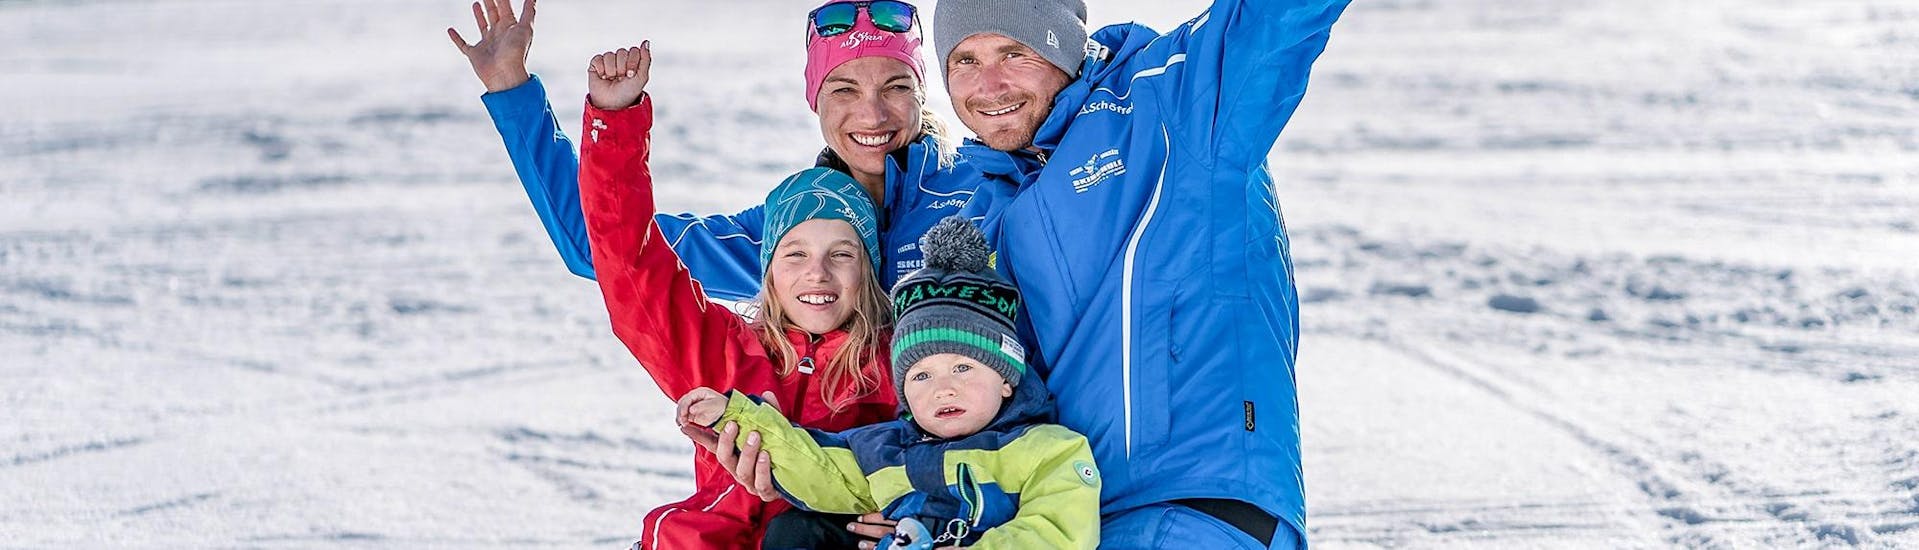 Privater Skikurs für die Familie für alle Levels.